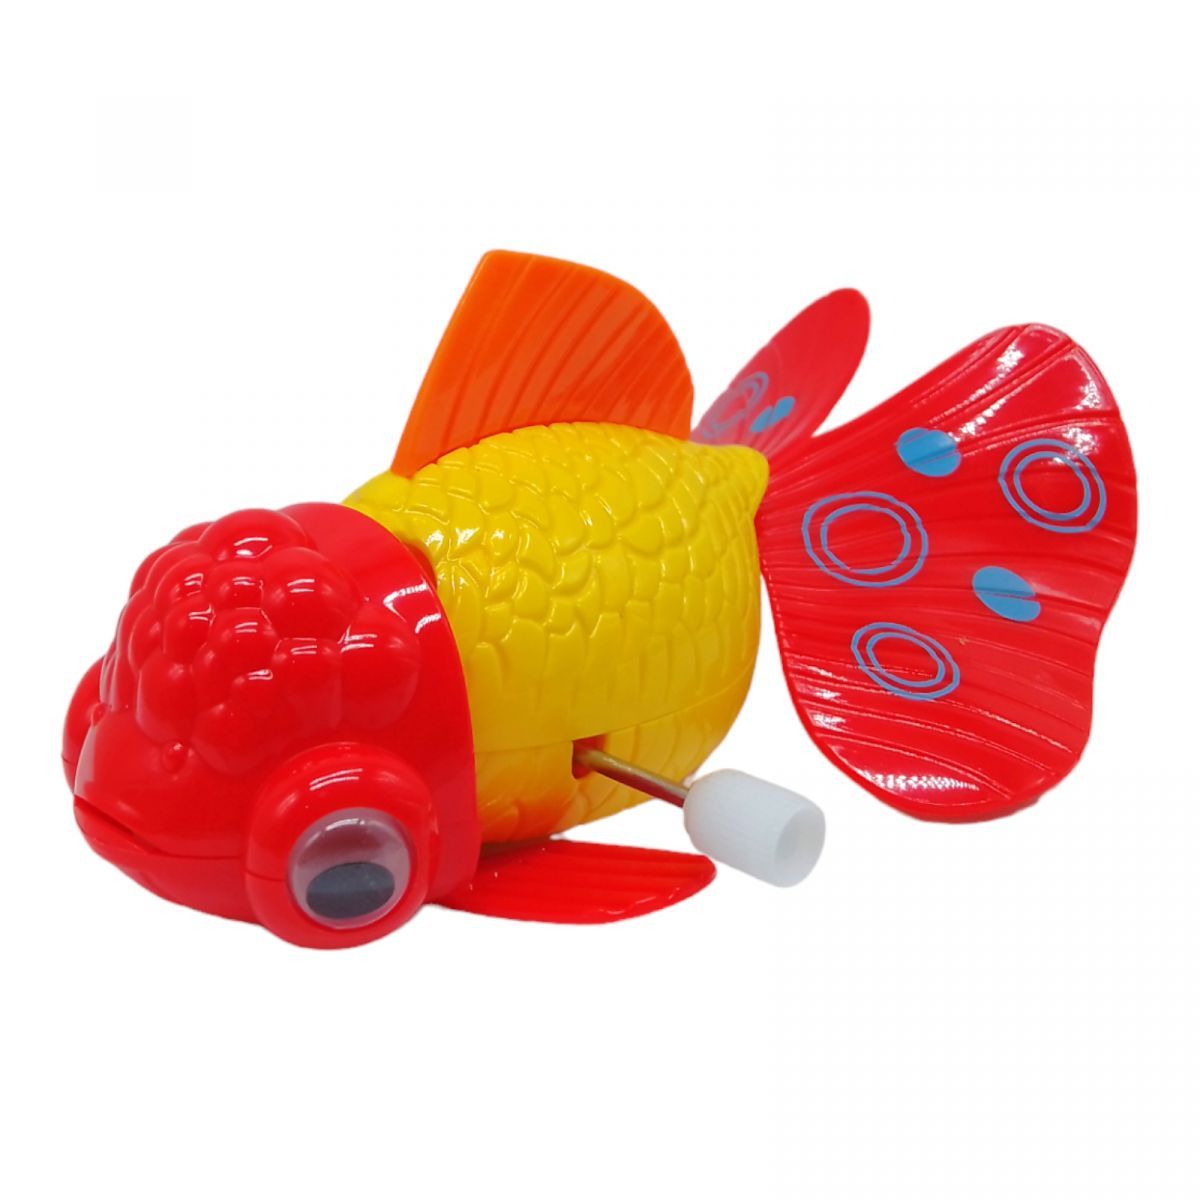 Уцінка.  Заводна іграшка "Золота рибка" (жовта) - відсутній верхній плавник